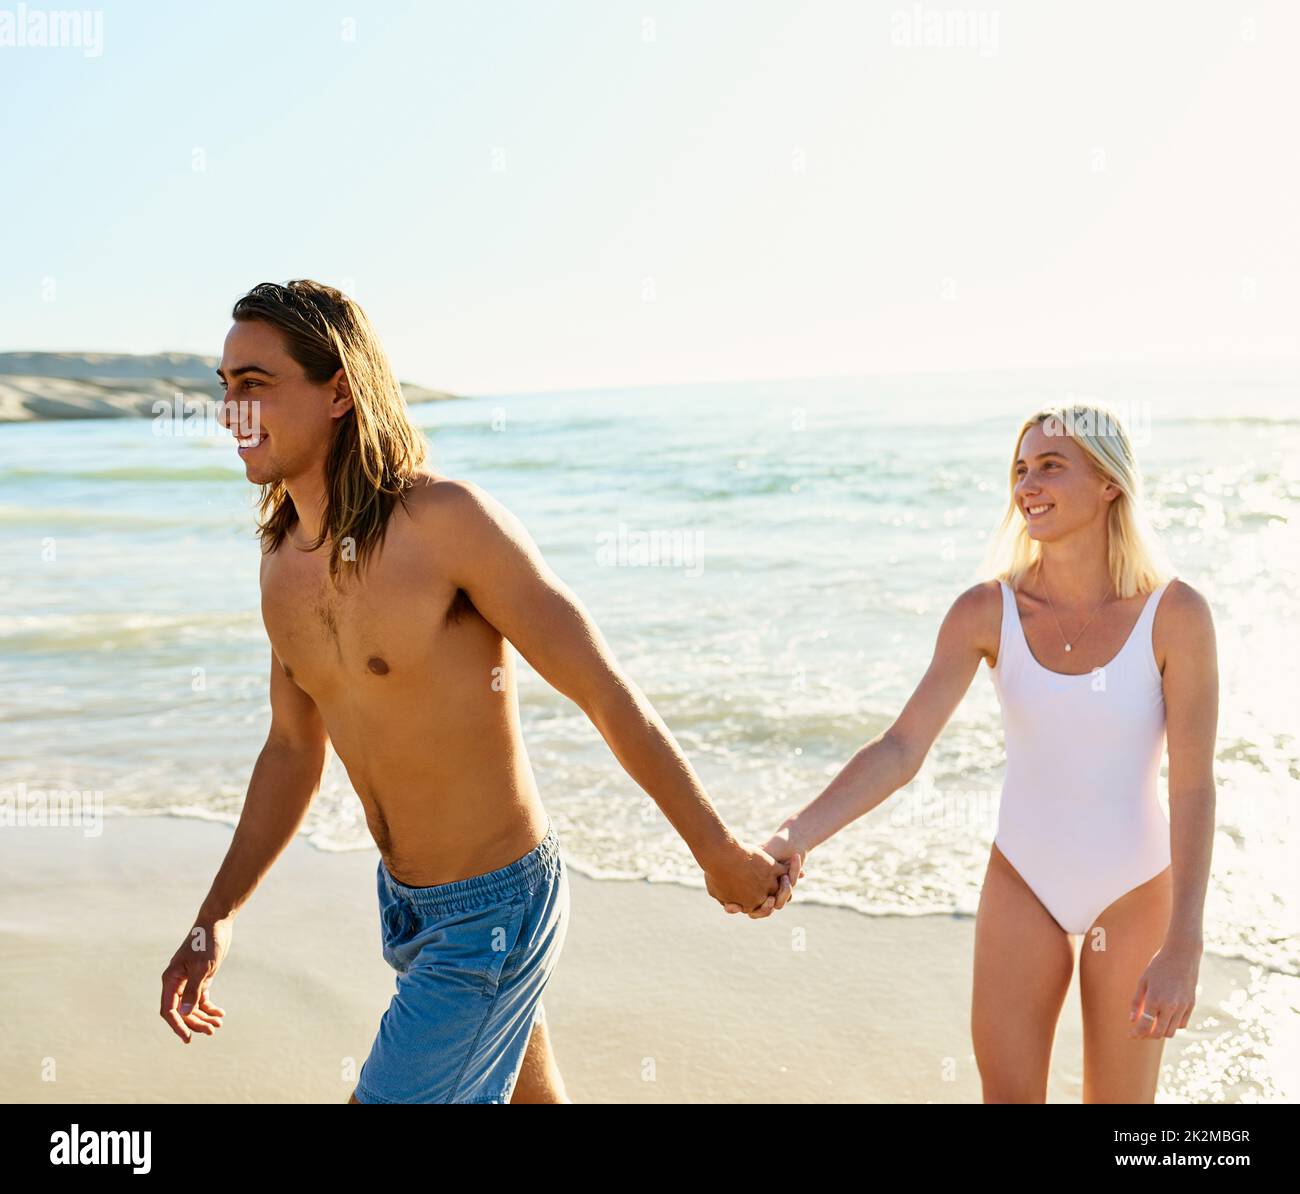 Ich möchte mit euch durch das Leben schlendern. Aufnahme eines jungen Paares, das eine gute Zeit zusammen am Strand genießt. Stockfoto